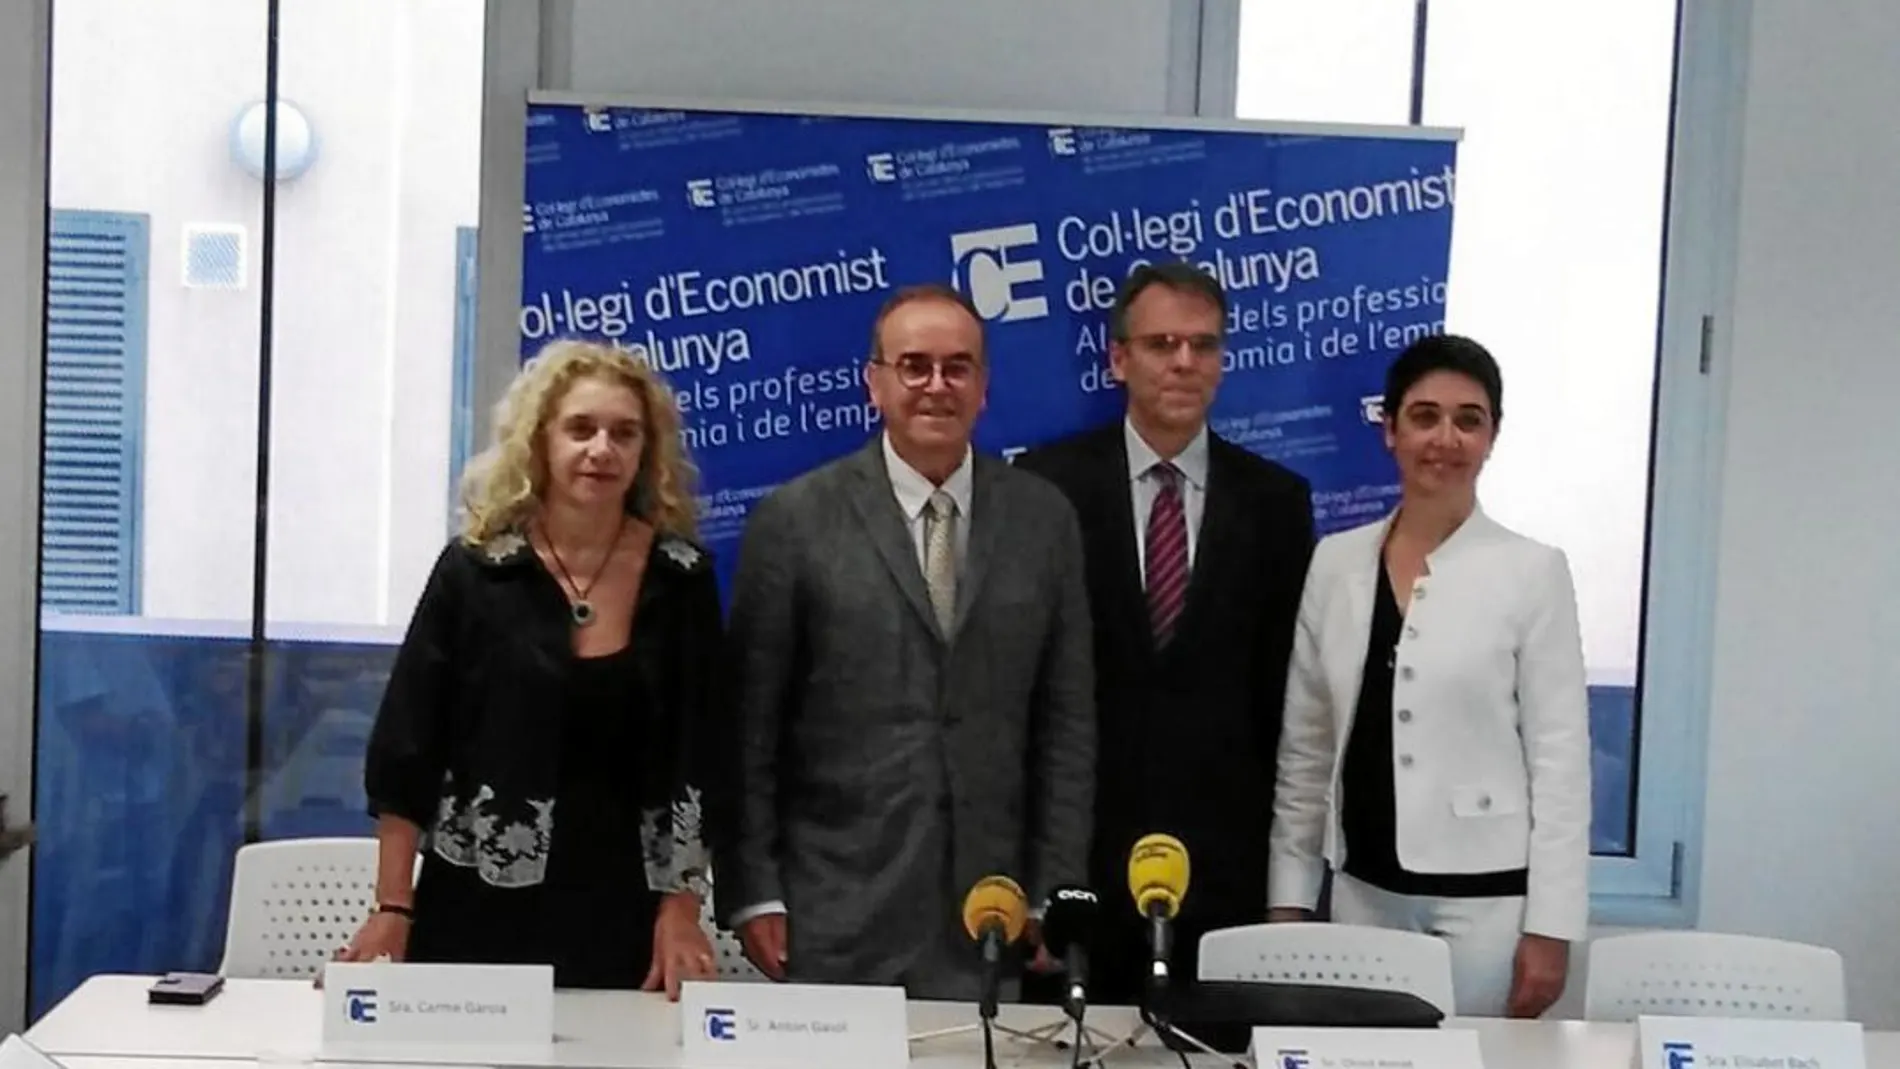 Imagen de los nuevos miembros de la Junta de Gobierno del Colegio, ayer en la rueda de prensa. Foto: Economistas de Cataluña